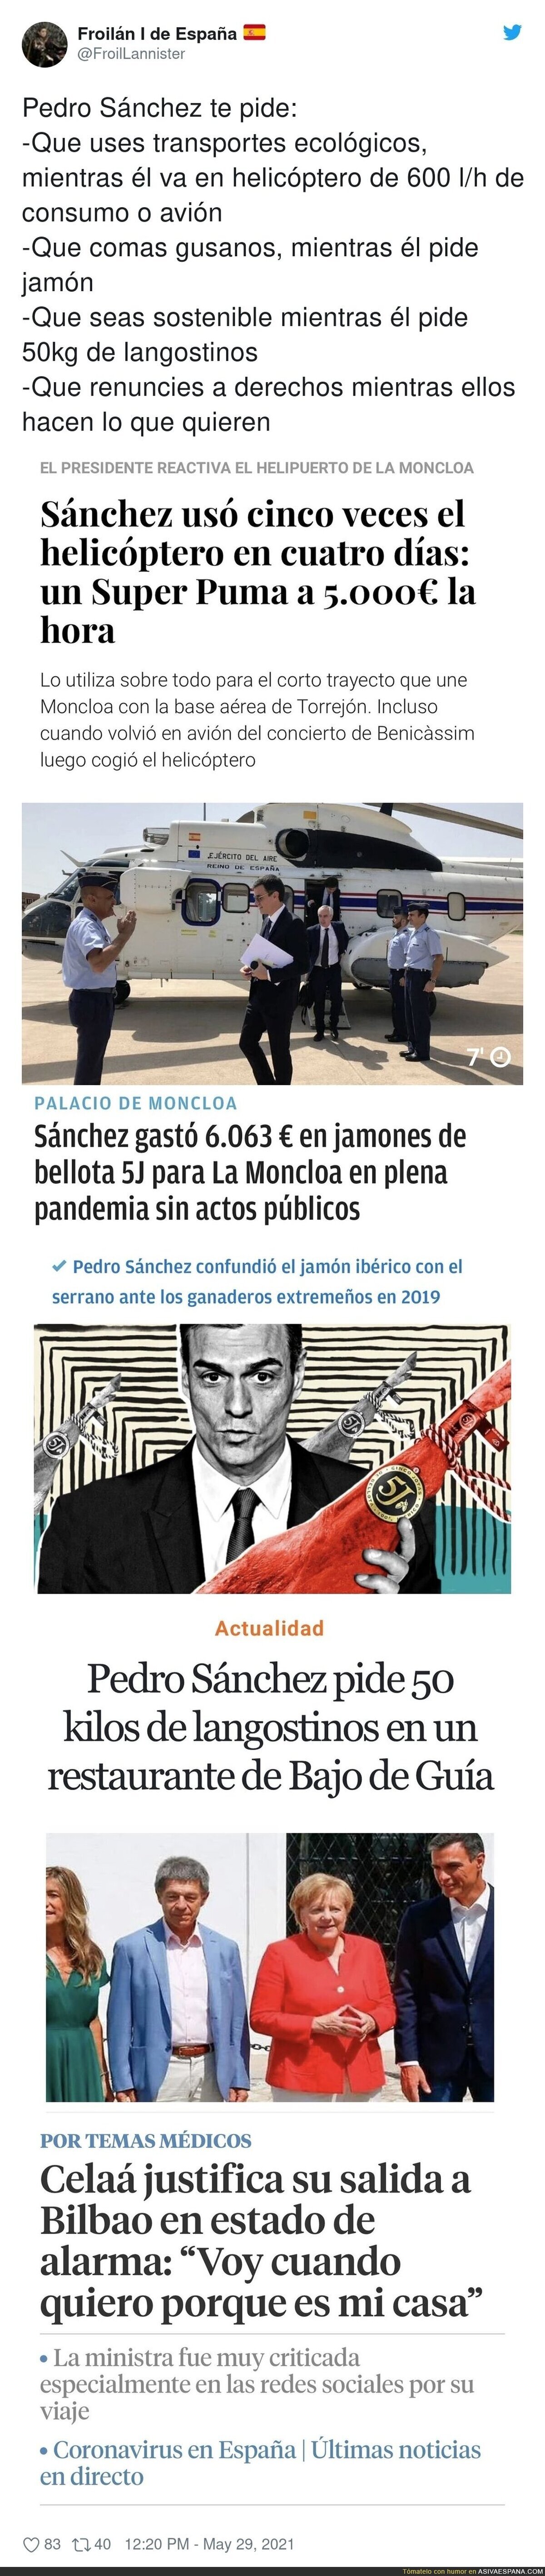 Lo que pide a los Pedro Sánchez y lo que hace él mismo...